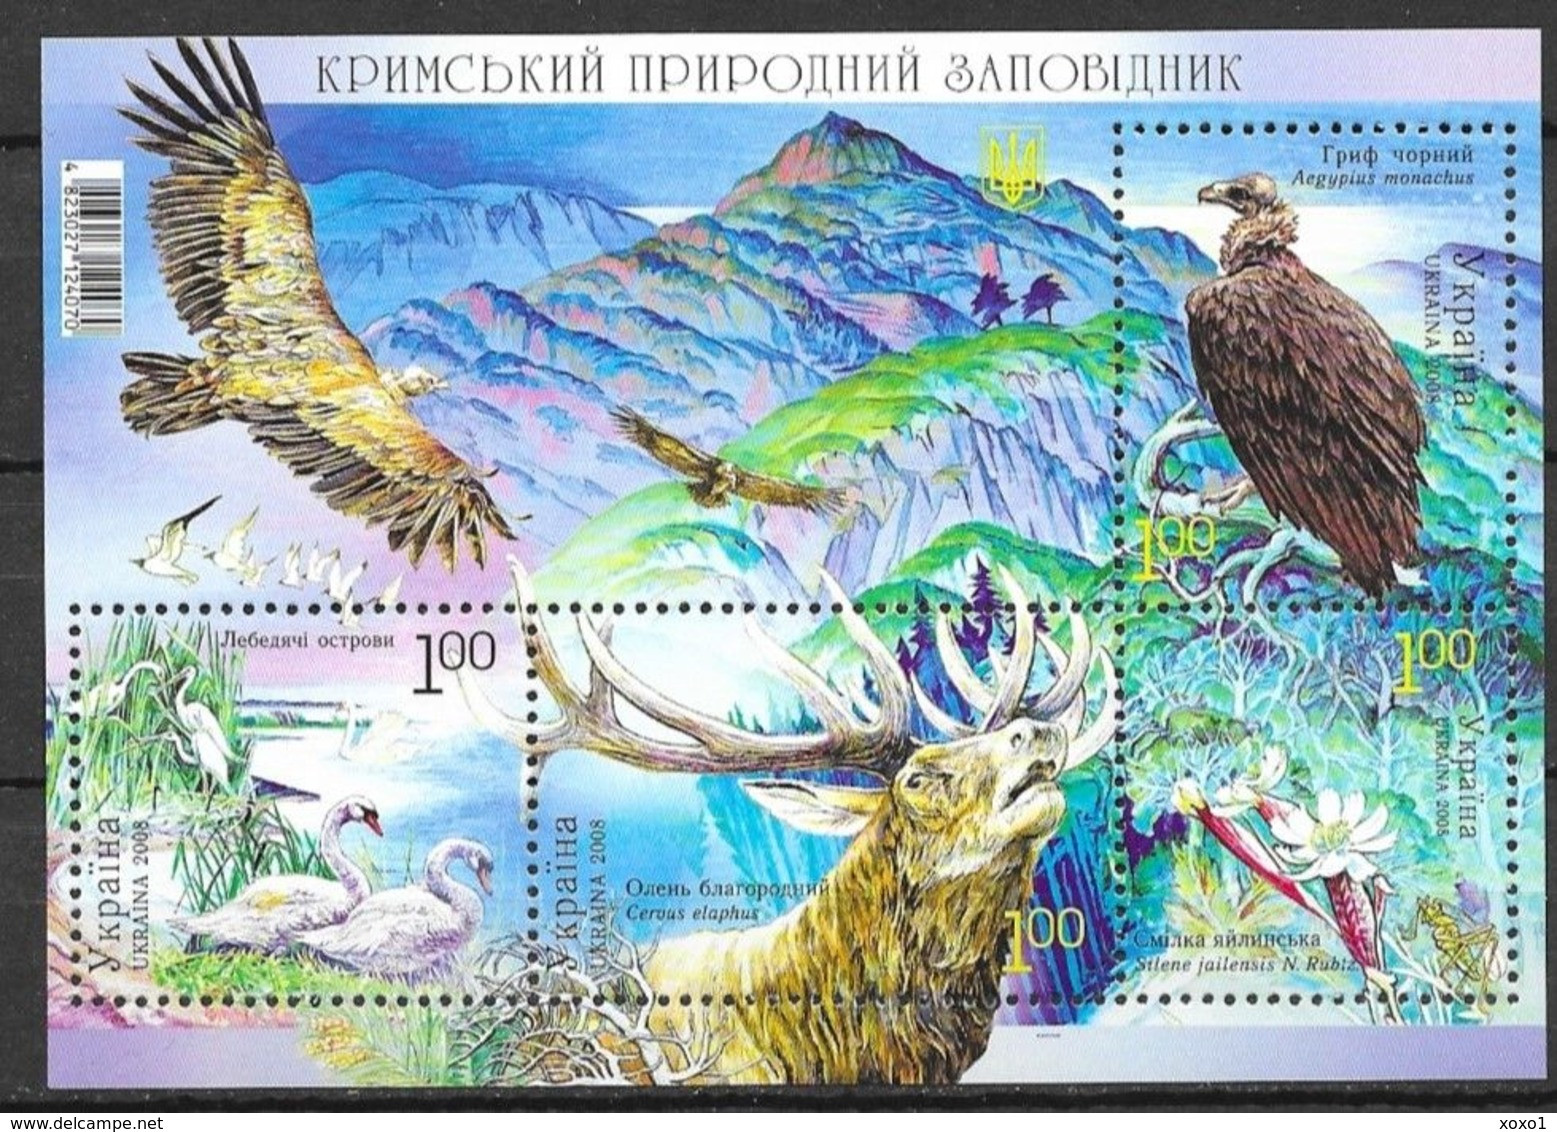 Ukraine 2008 MiNr. 973 - 976 (Block 68) Crimea Nature Reserve Birds Animals Plants S\sh  MNH ** 3,20 € - Aigles & Rapaces Diurnes